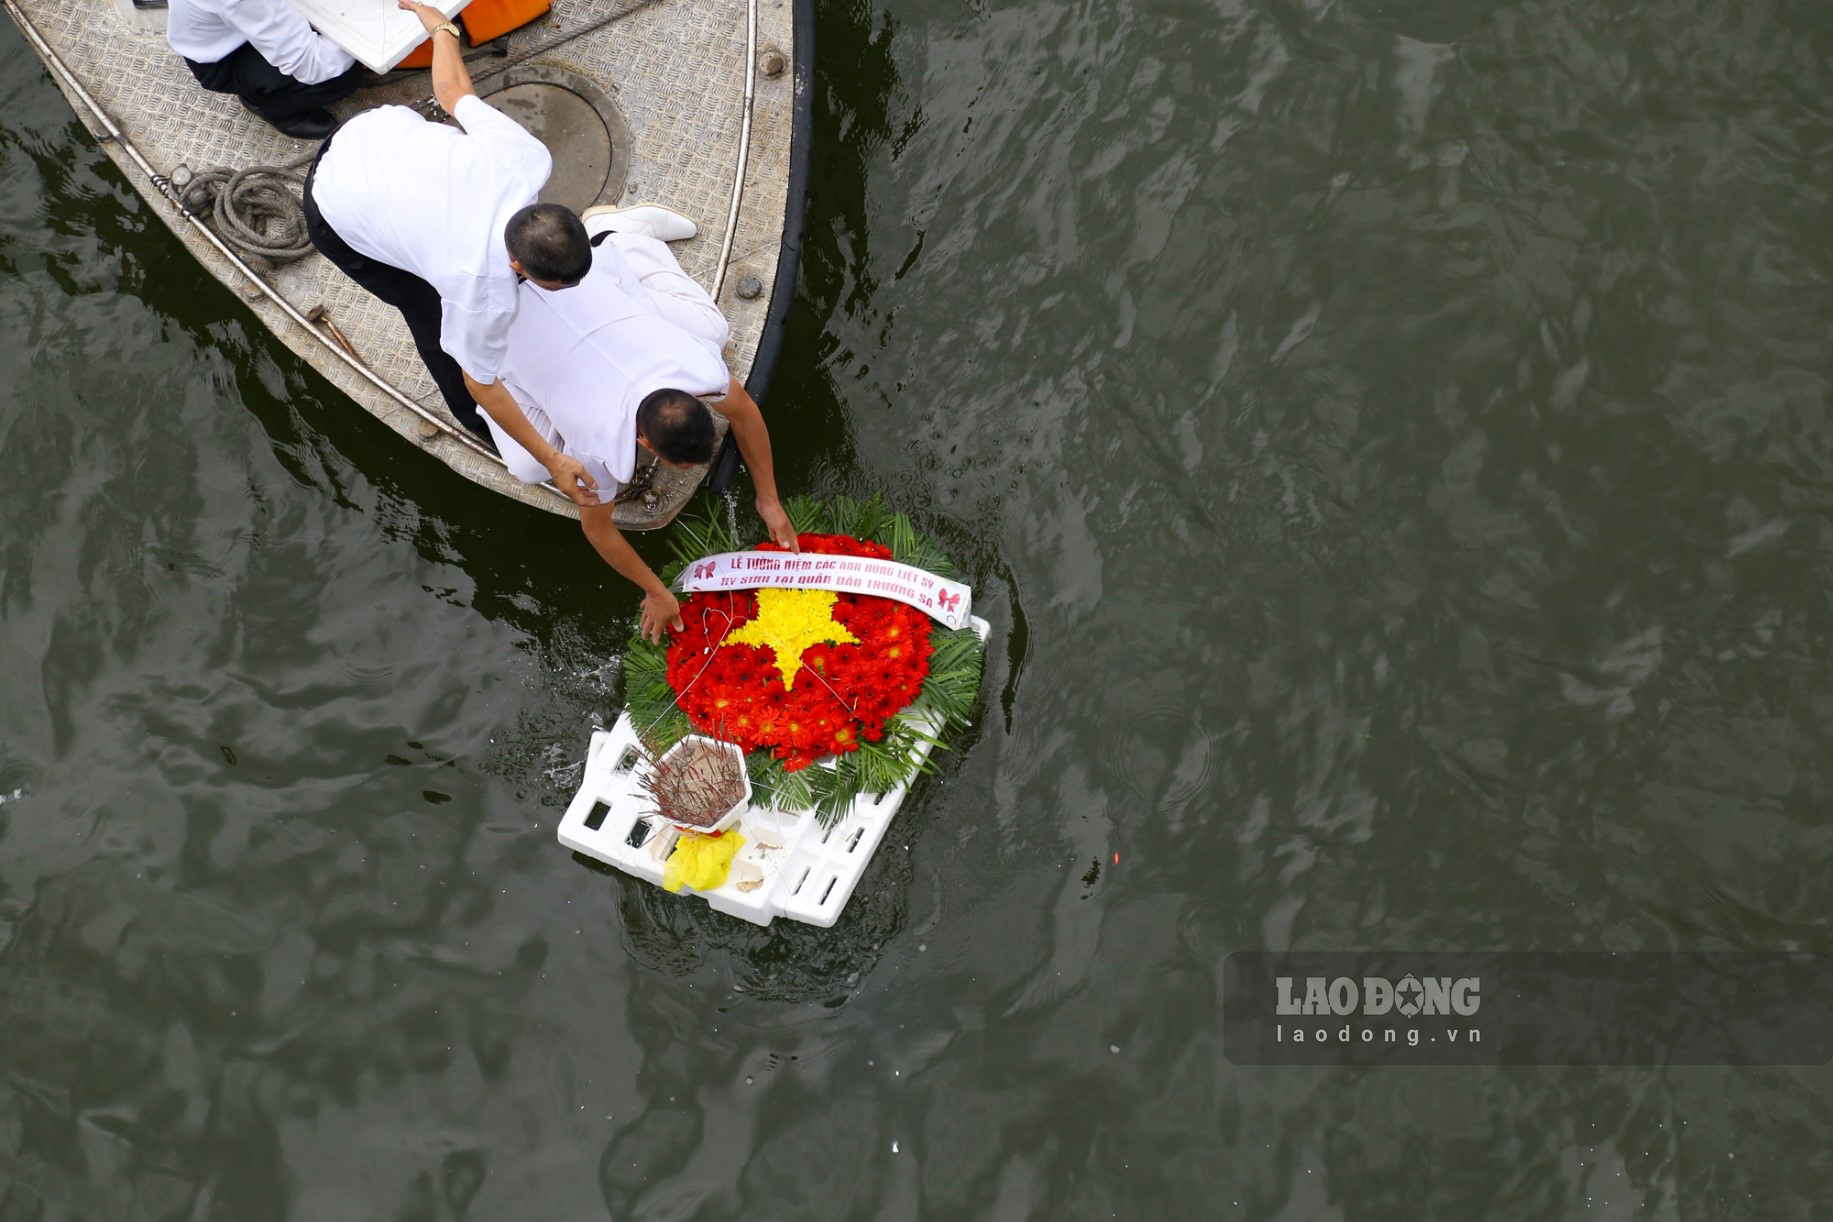 Vòng hoa sau đó được thả trôi, để tưởng nhớ hương linh các liệt sĩ đã hi sinh vì bảo vệ chủ quyền biển đảo.